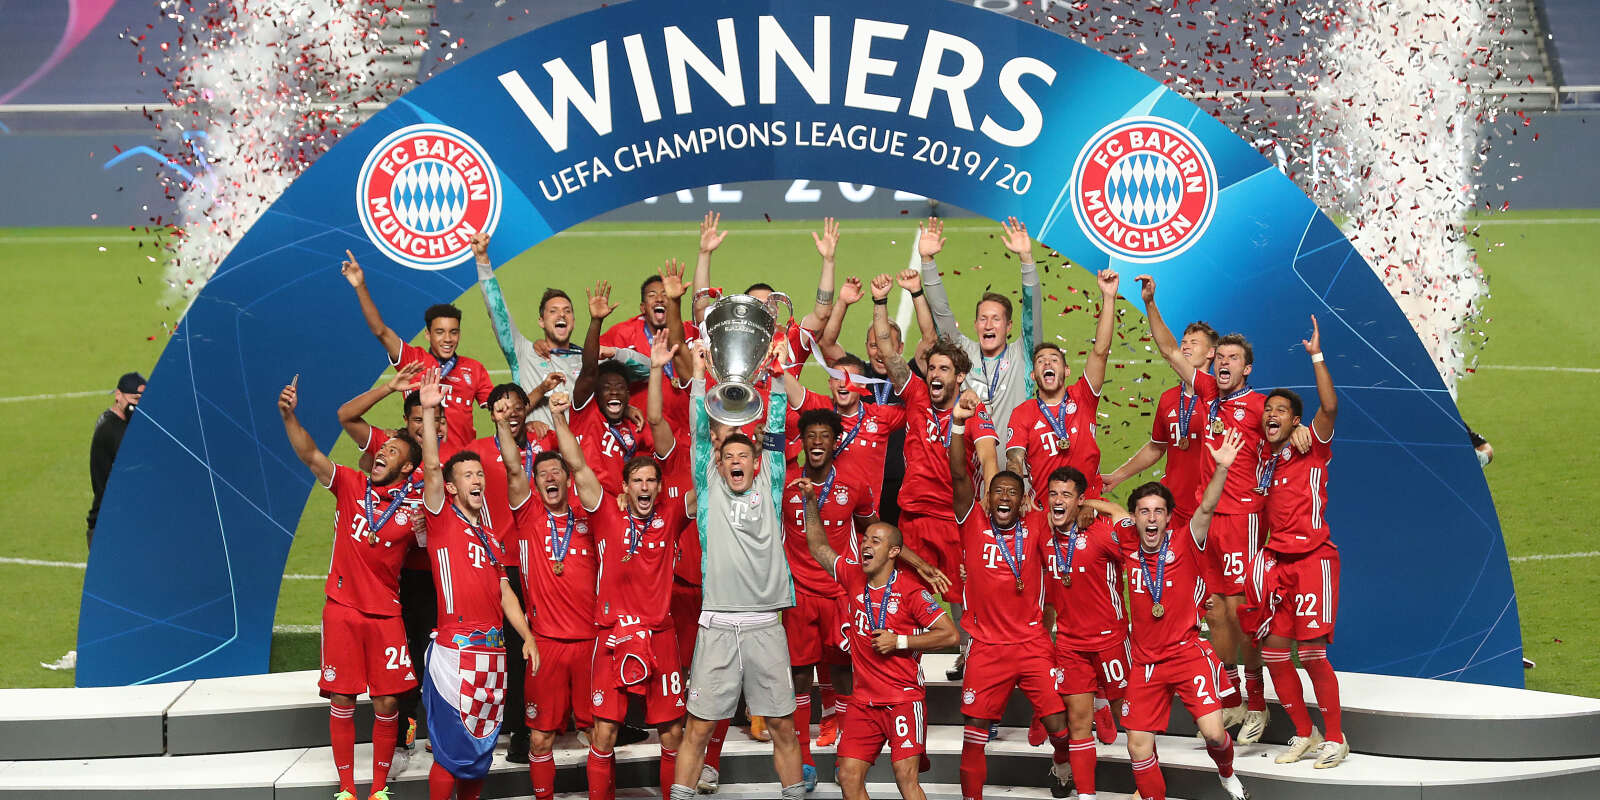 Le Bayern Munich a remporté la sixième Ligue des champions de son histoire contre le PSG (1-0), dimanche 23 août, au stade de Luz, à Lisbonne.